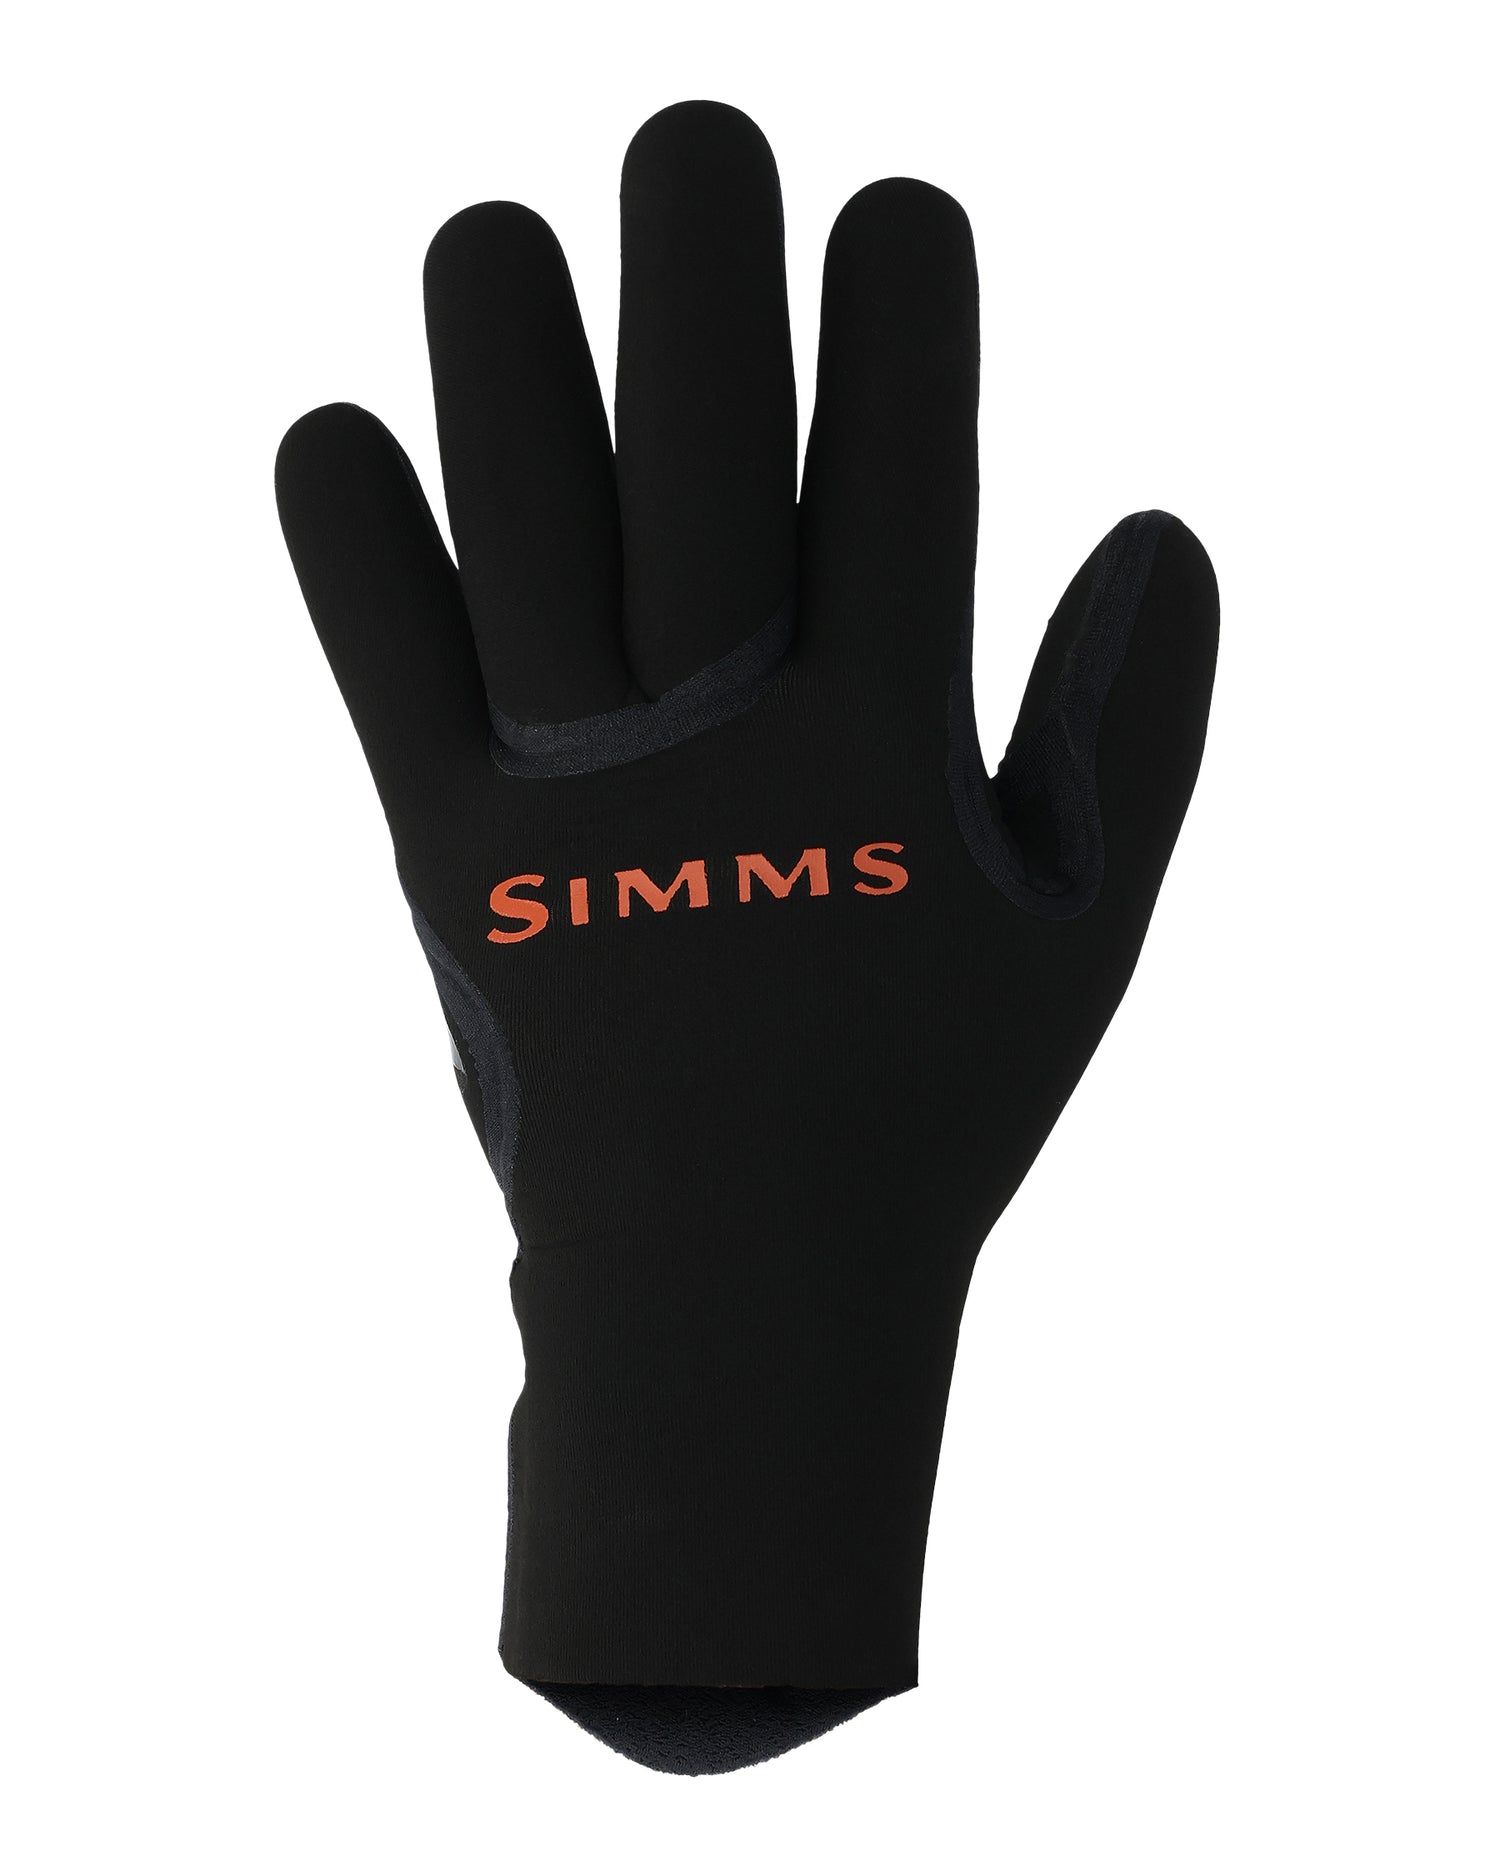 Simms, Glove, Neoprene, Ice, Winter, Waterproof, Fishing